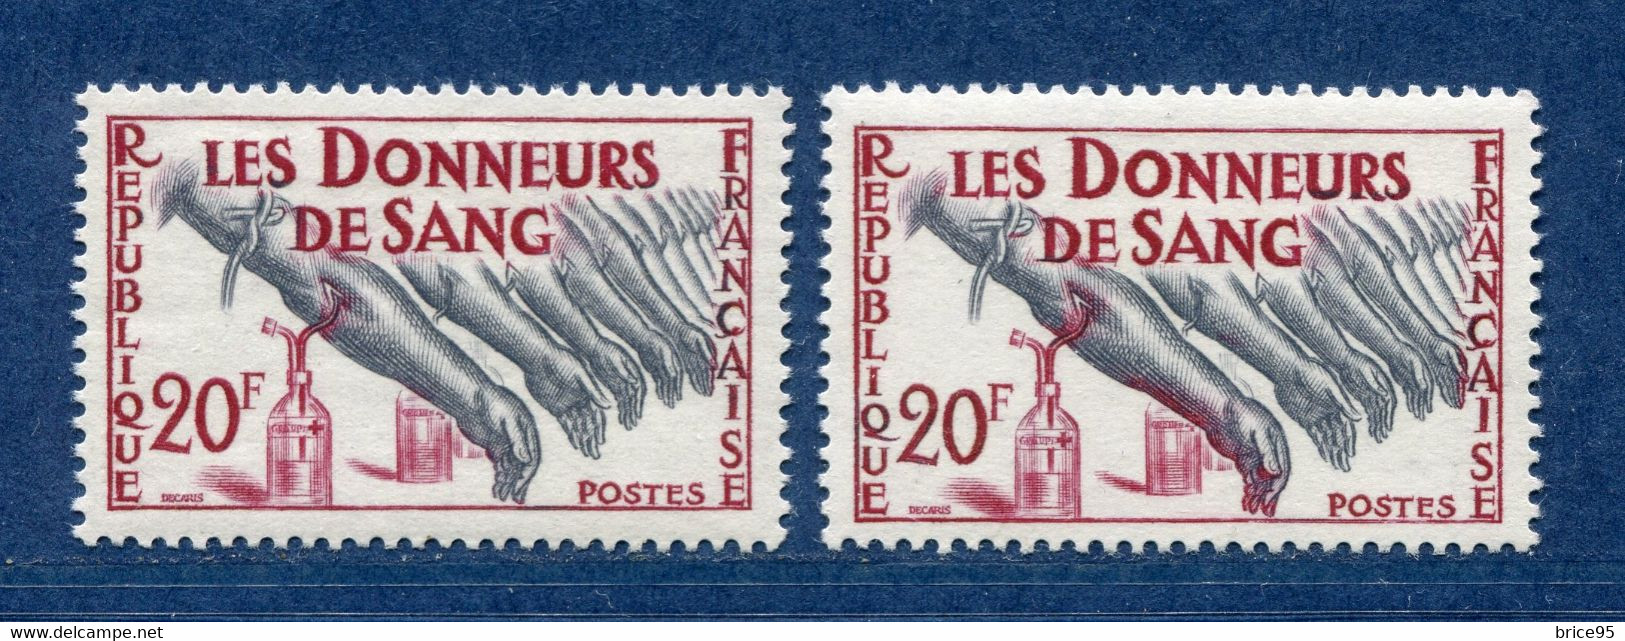 ⭐ France - Variété - YT N° 1220 - Couleurs - Pétouille - Neuf Sans Charnière - 1959 ⭐ - Neufs